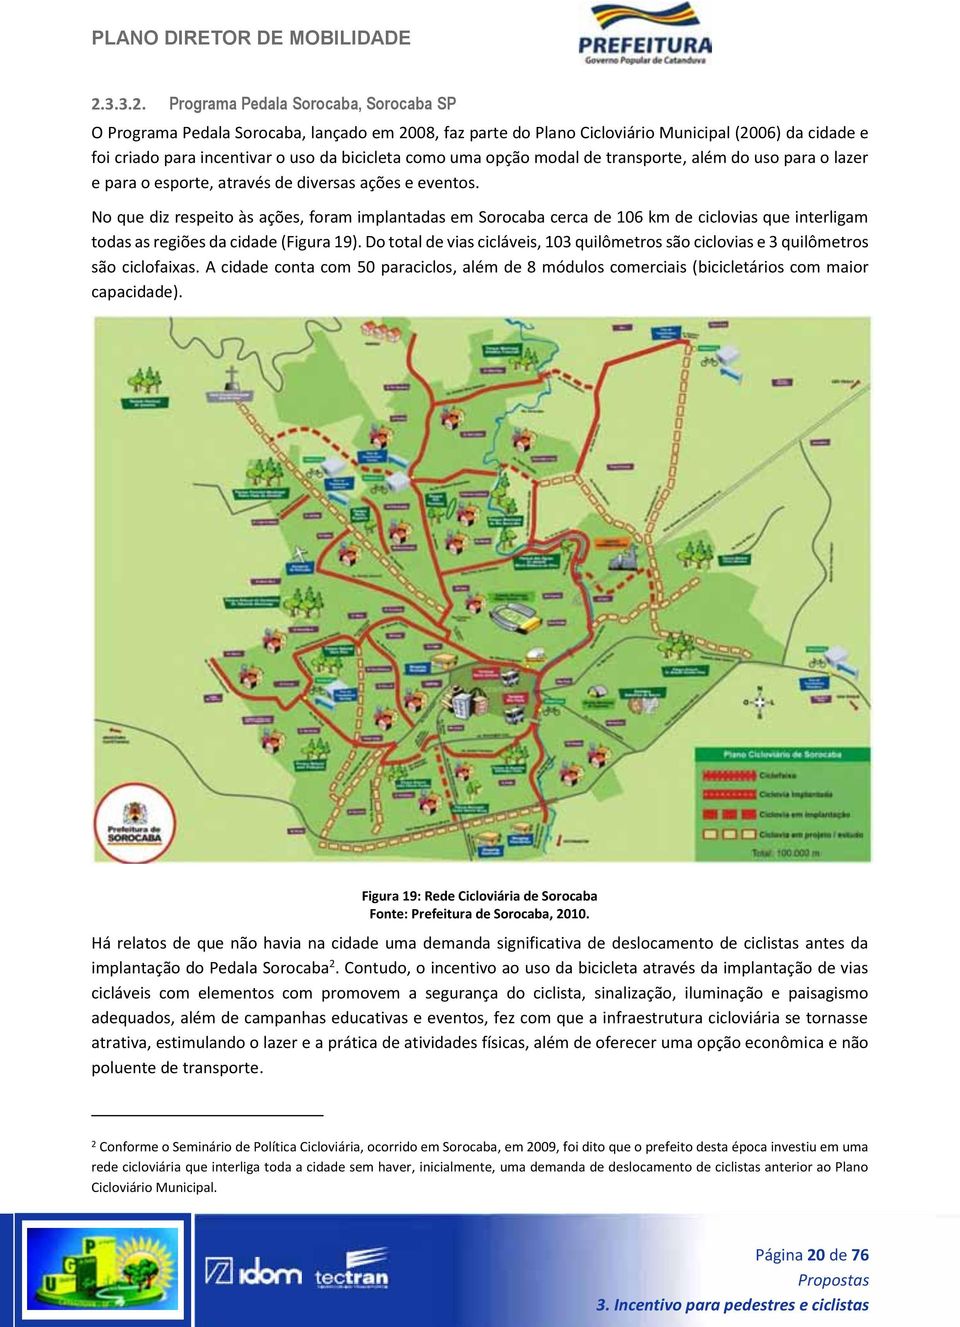 No que diz respeito às ações, foram implantadas em Sorocaba cerca de 106 km de ciclovias que interligam todas as regiões da cidade (Figura 19).